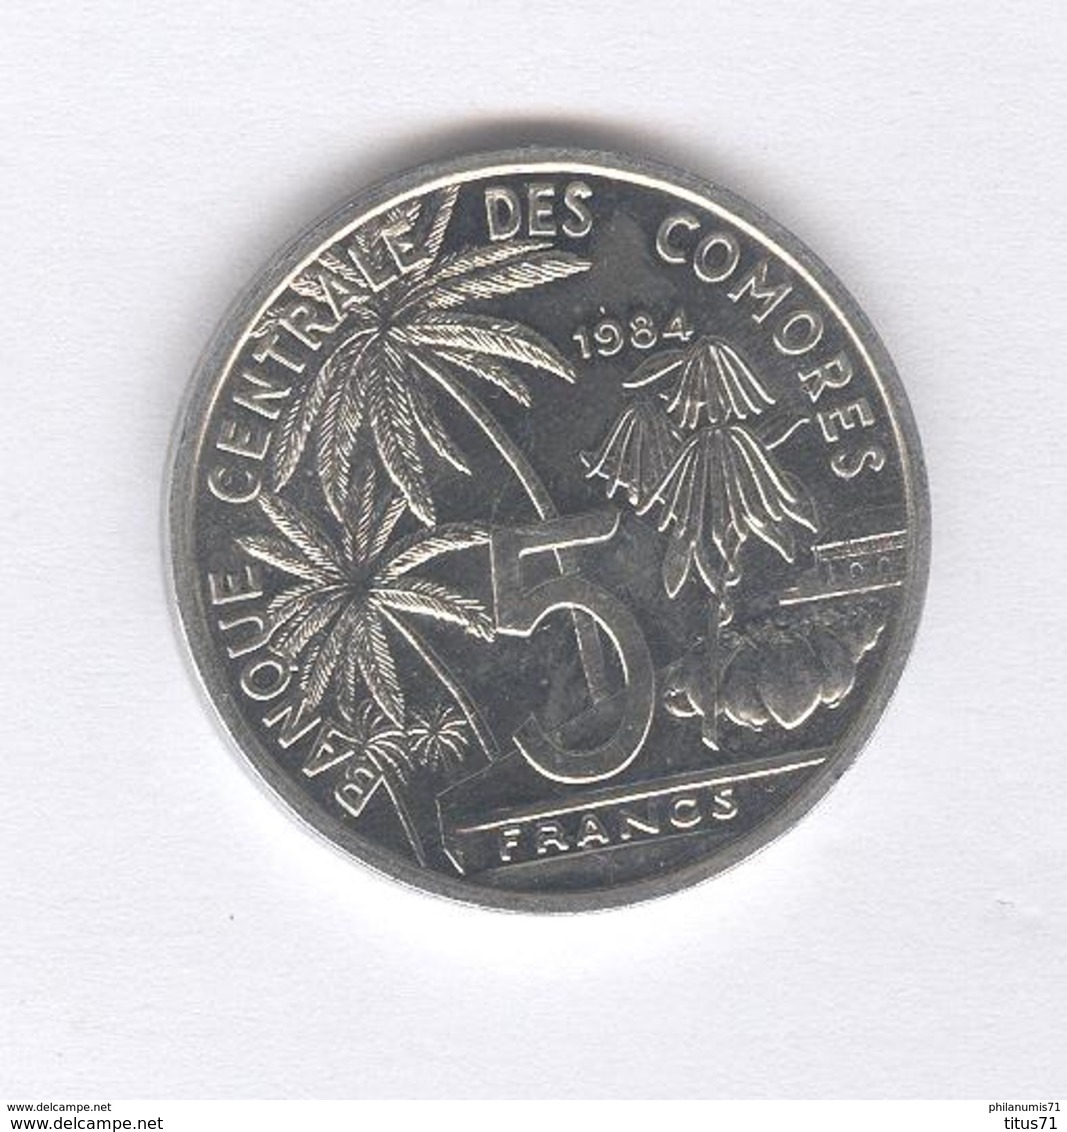 5 Francs Comores 1984 - SUP - Comores